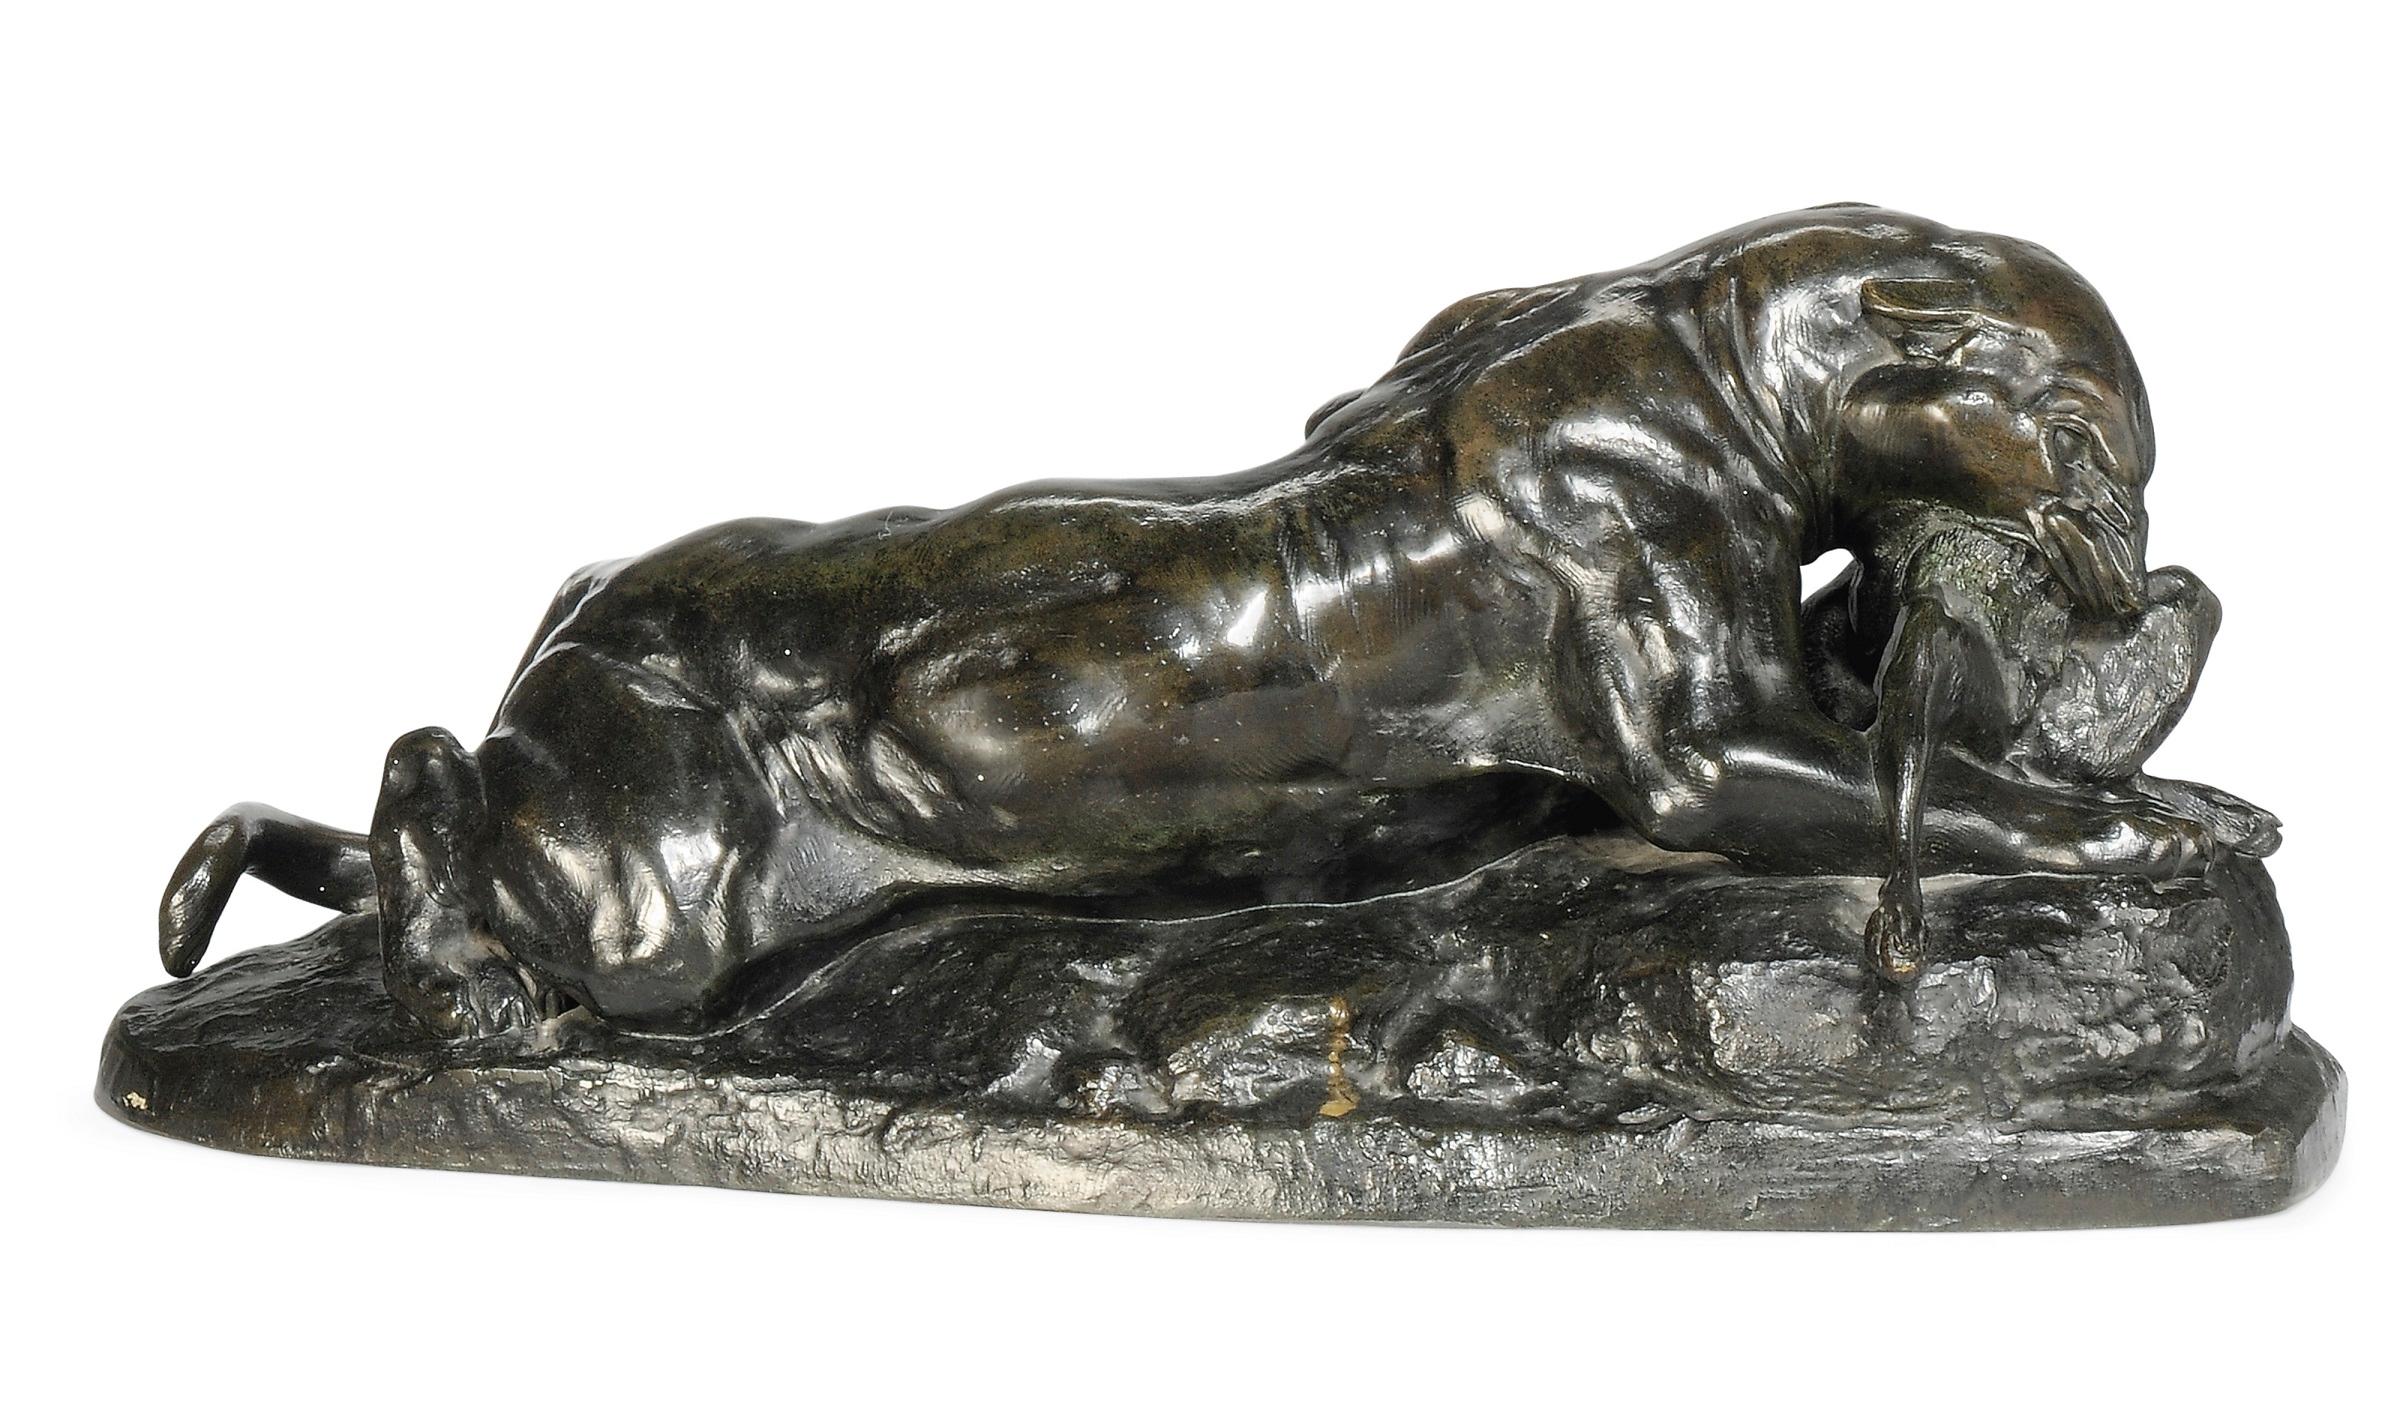 Jaguar Tenant un Liere - Sculpture by Antoine-Louis Barye